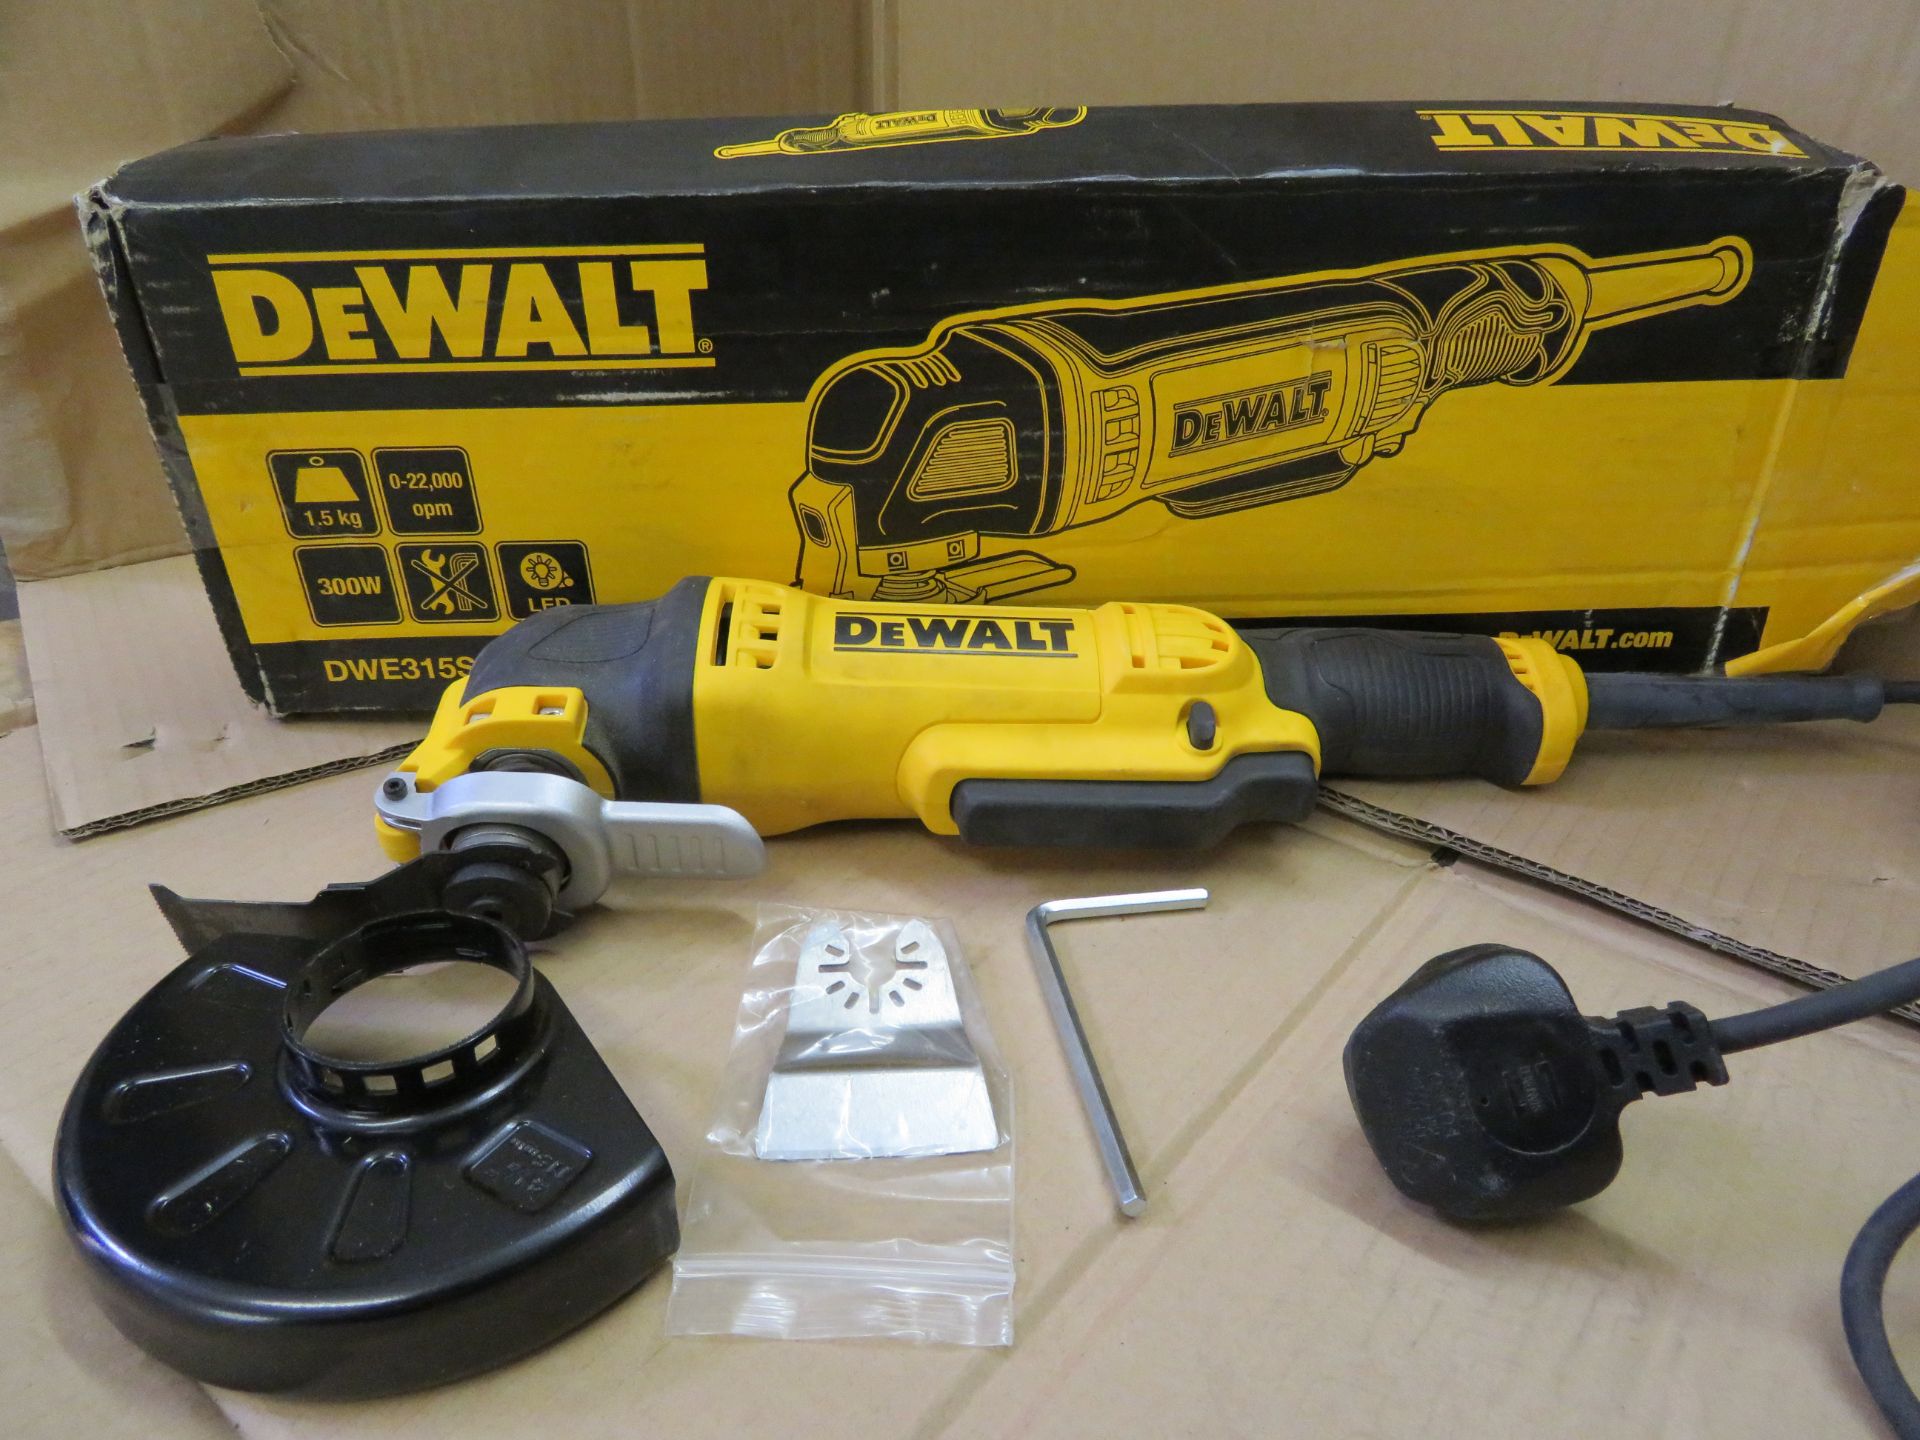 (A5) Dewalt Dwe315Sf-Gb 300W Oscillating Multi-Tool 240V - As New Condition, Slightly Worn Box. - Bild 2 aus 3